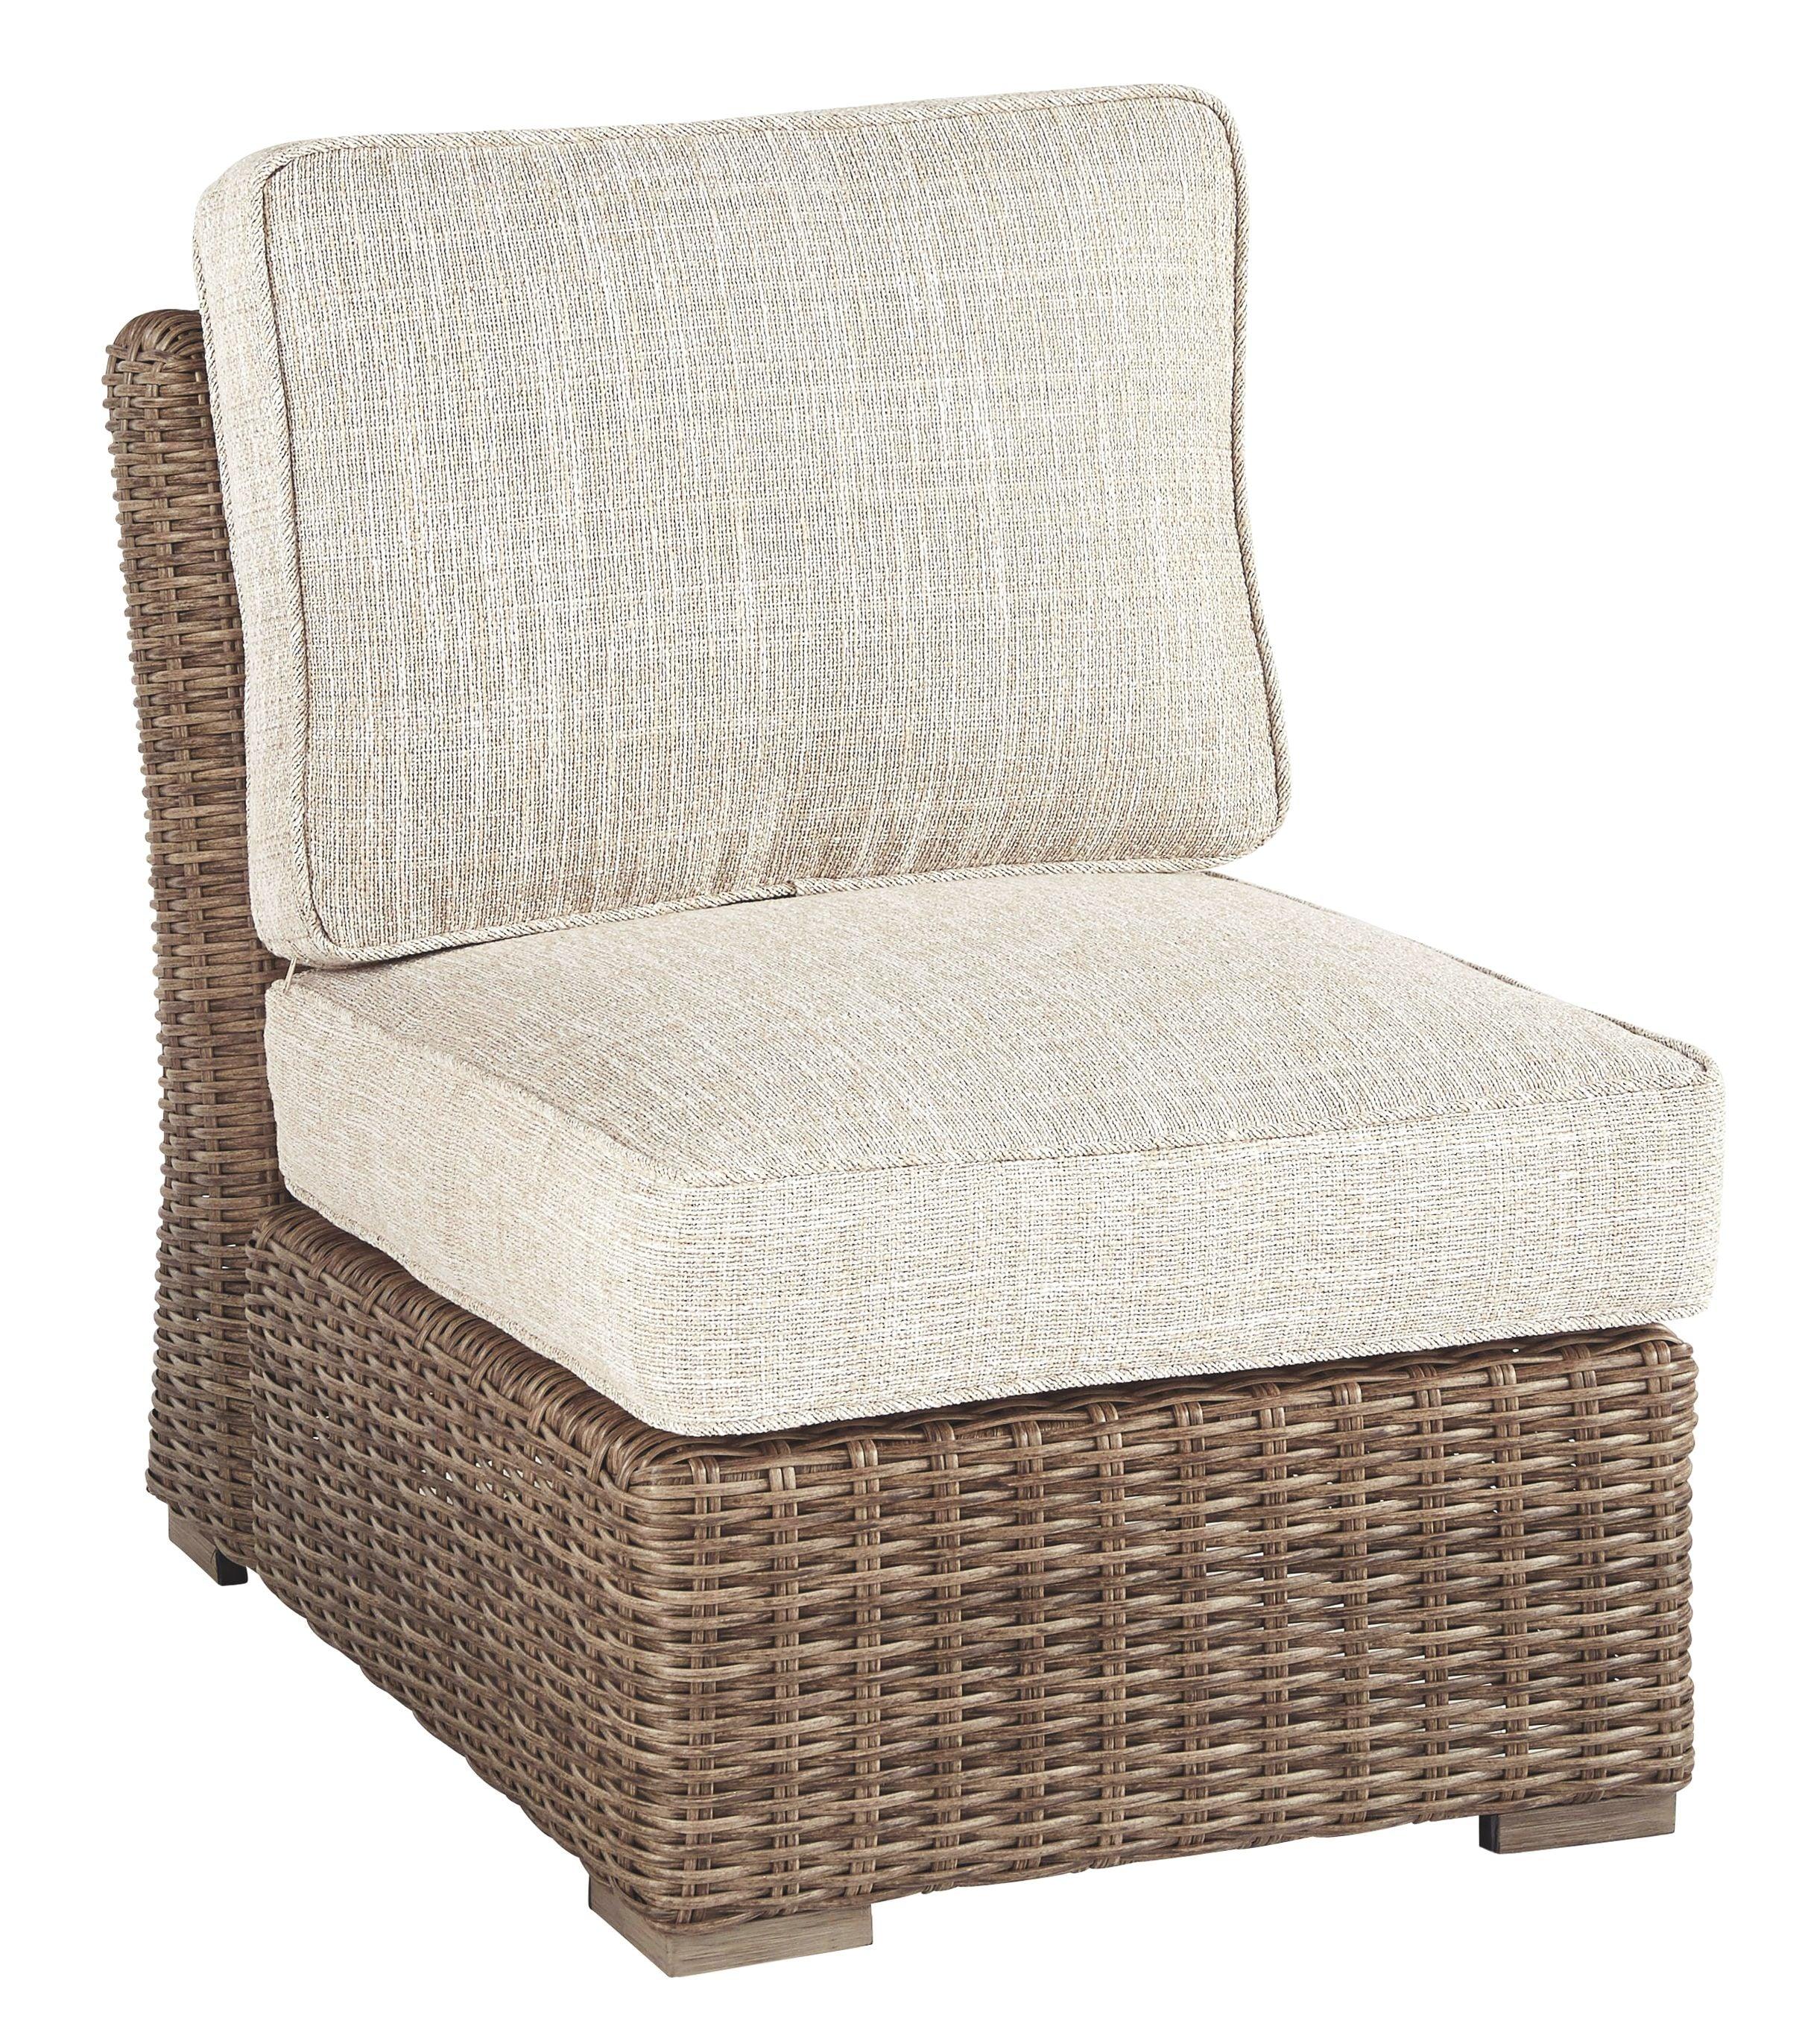 Ashley Furniture - Beachcroft - Beige - Armless Chair W/Cushion - 5th Avenue Furniture